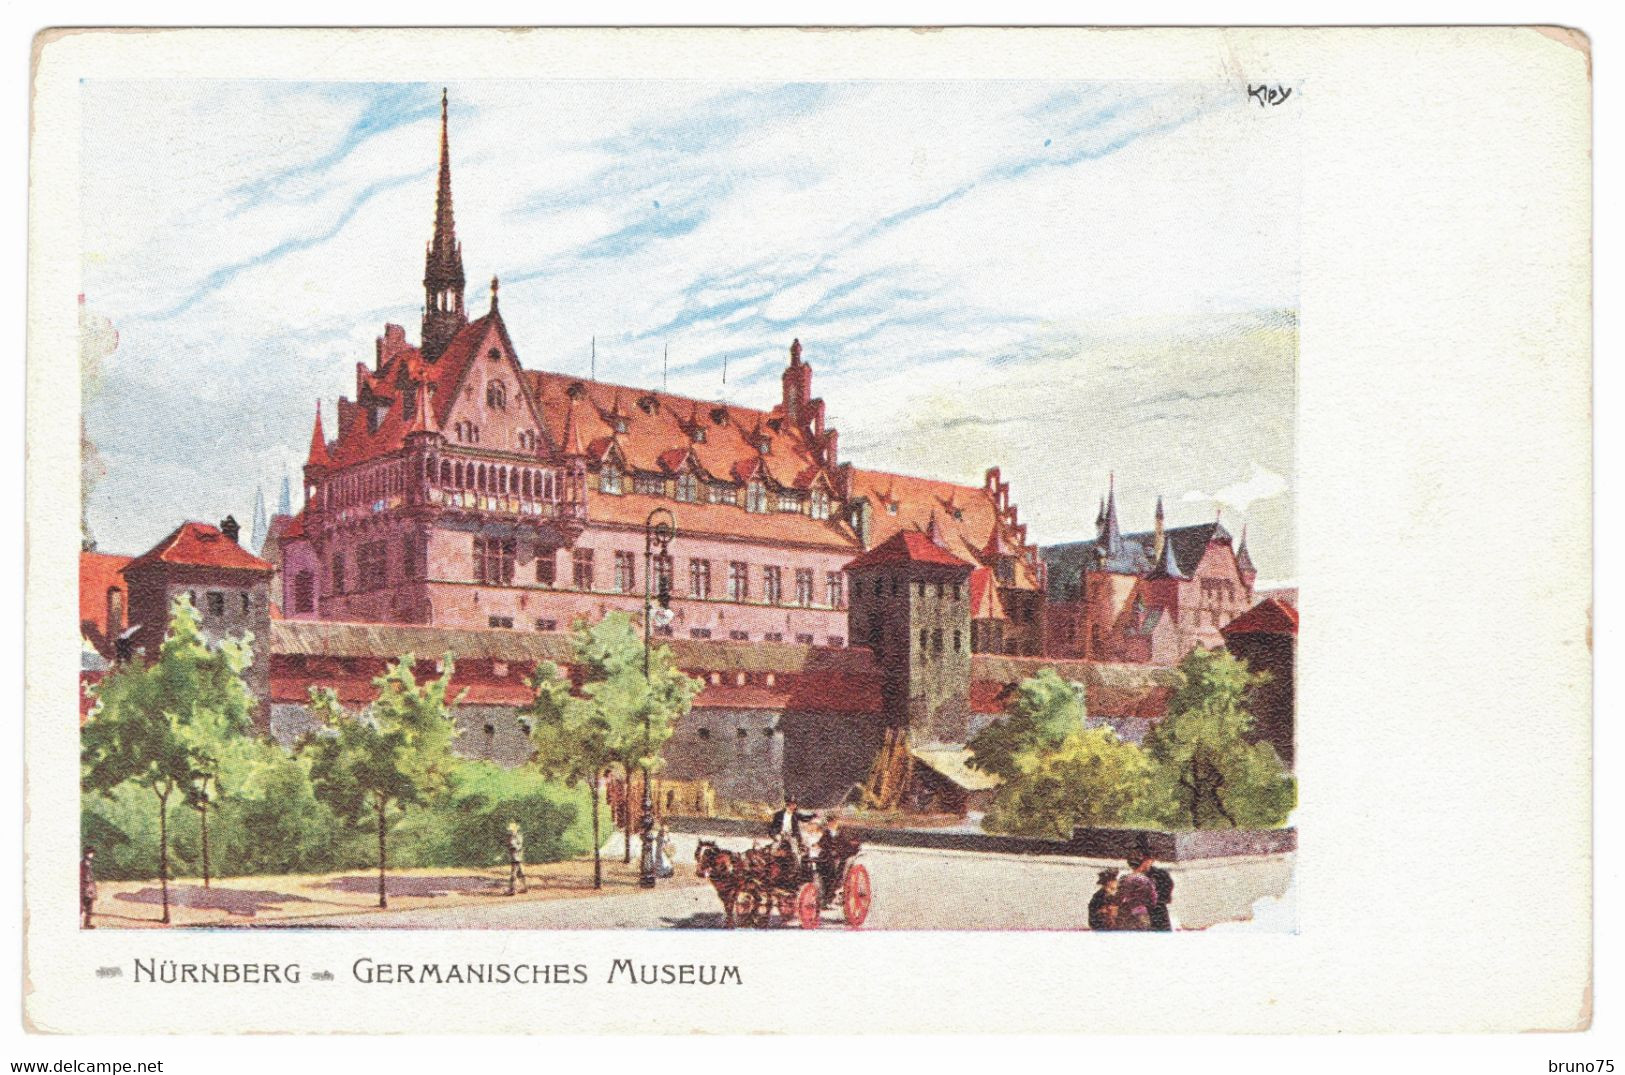 KLEY - NÜRNBERG - Germanisches Museum - 1906 - Kley